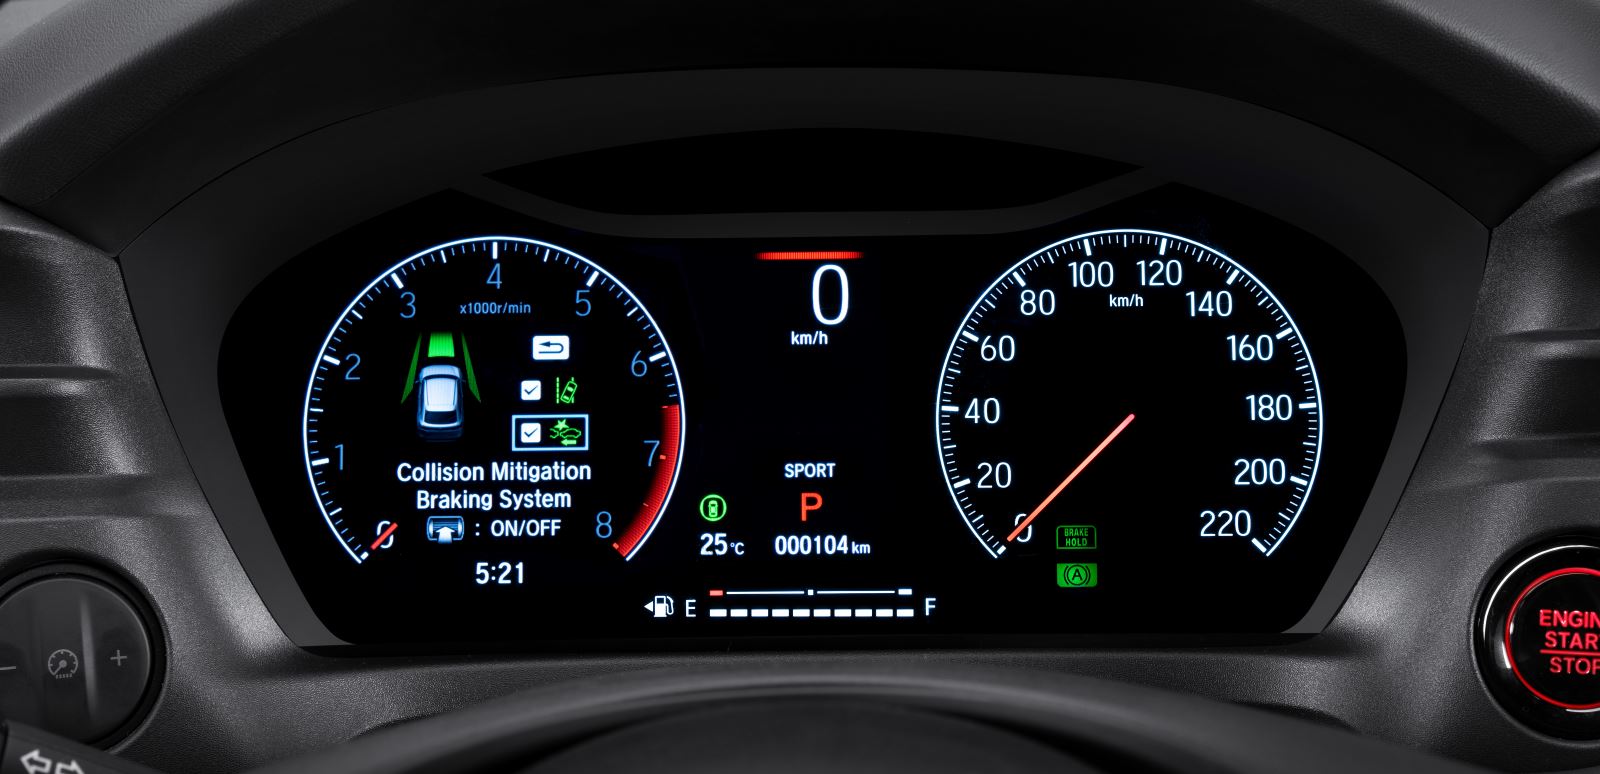 Định nghĩa, cấu tạo và nguyên lý hoạt động của đồng hồ đo tốc độ trên ô tô